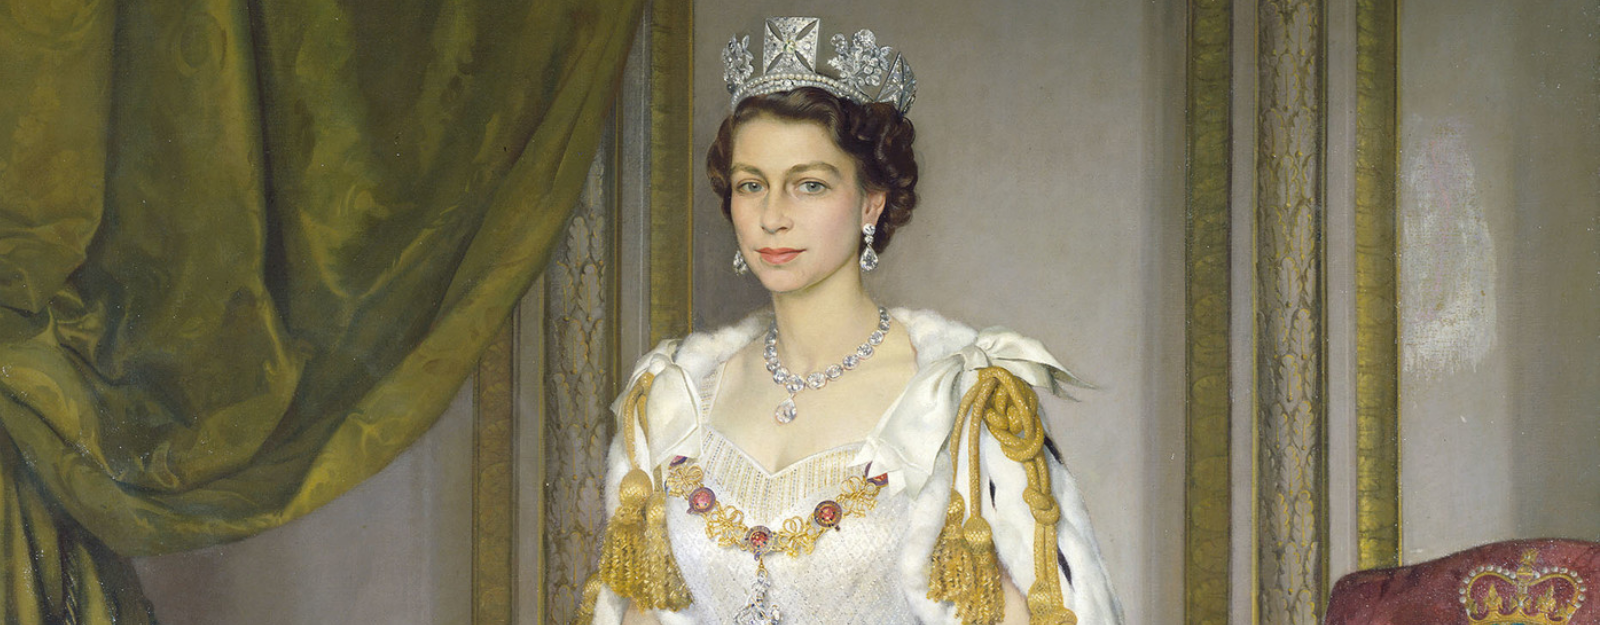 Painting of Queen Elizabeth II in Coronation Robes